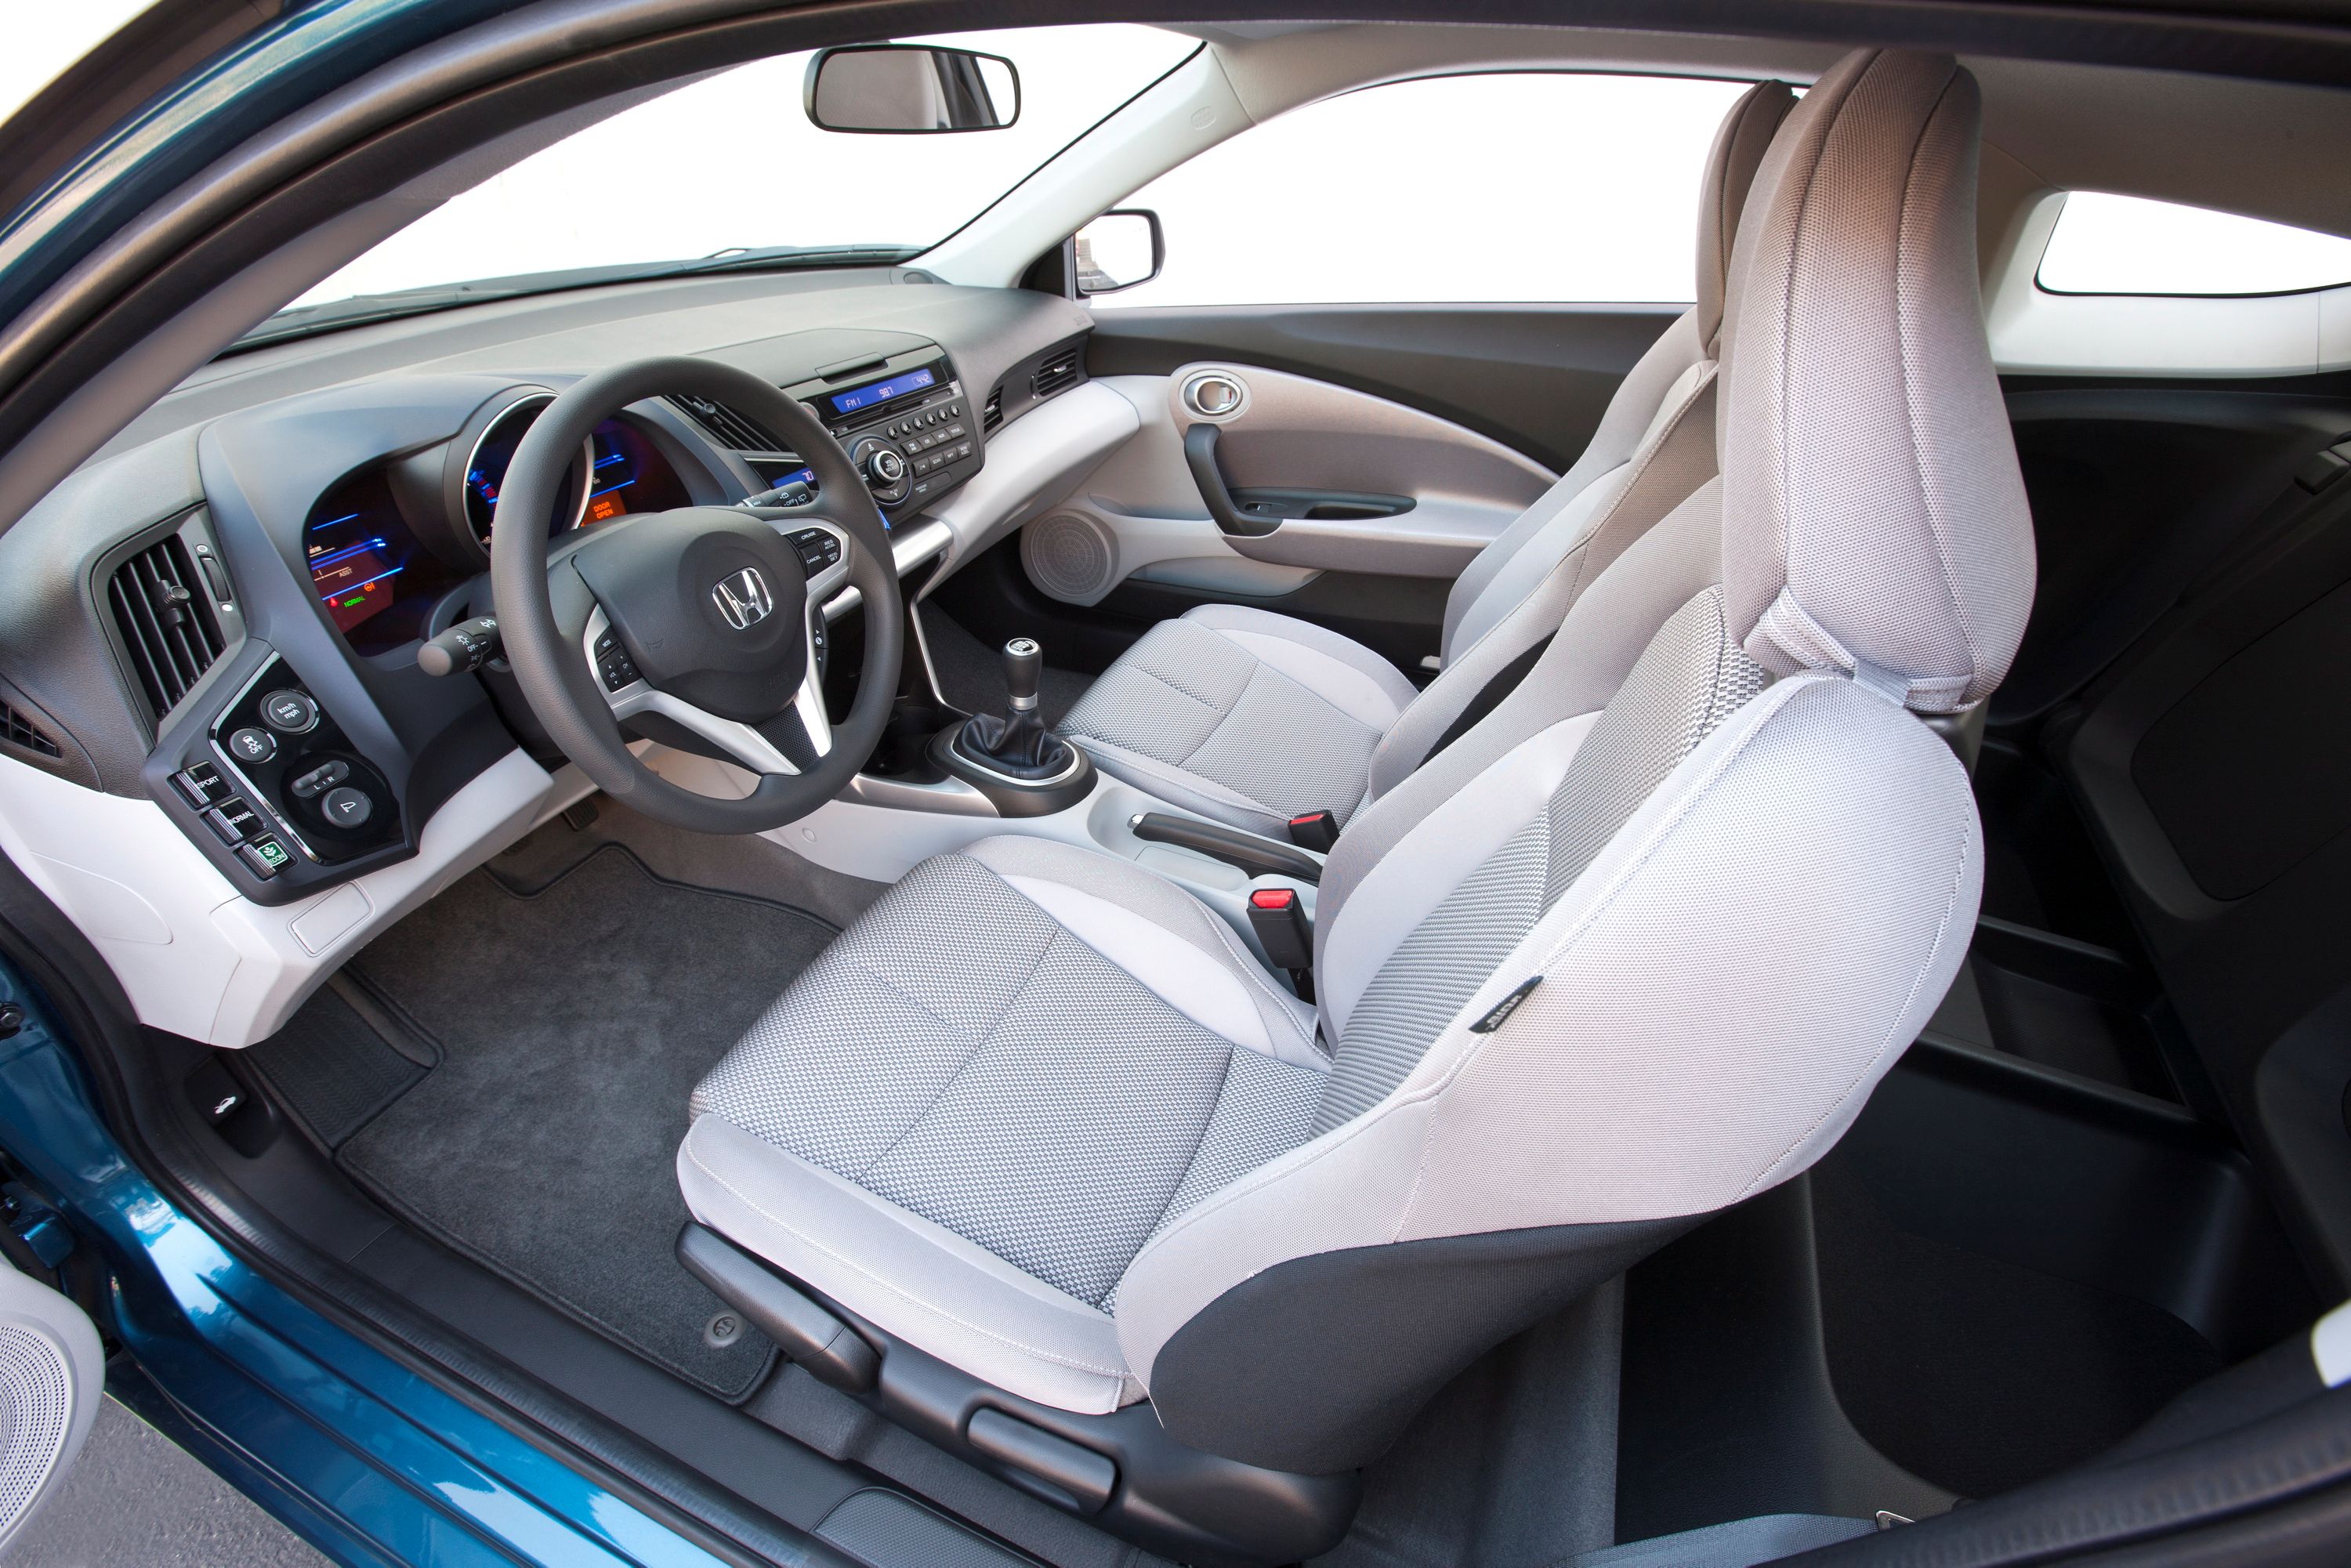 Honda CR-Z - Interior photos of.